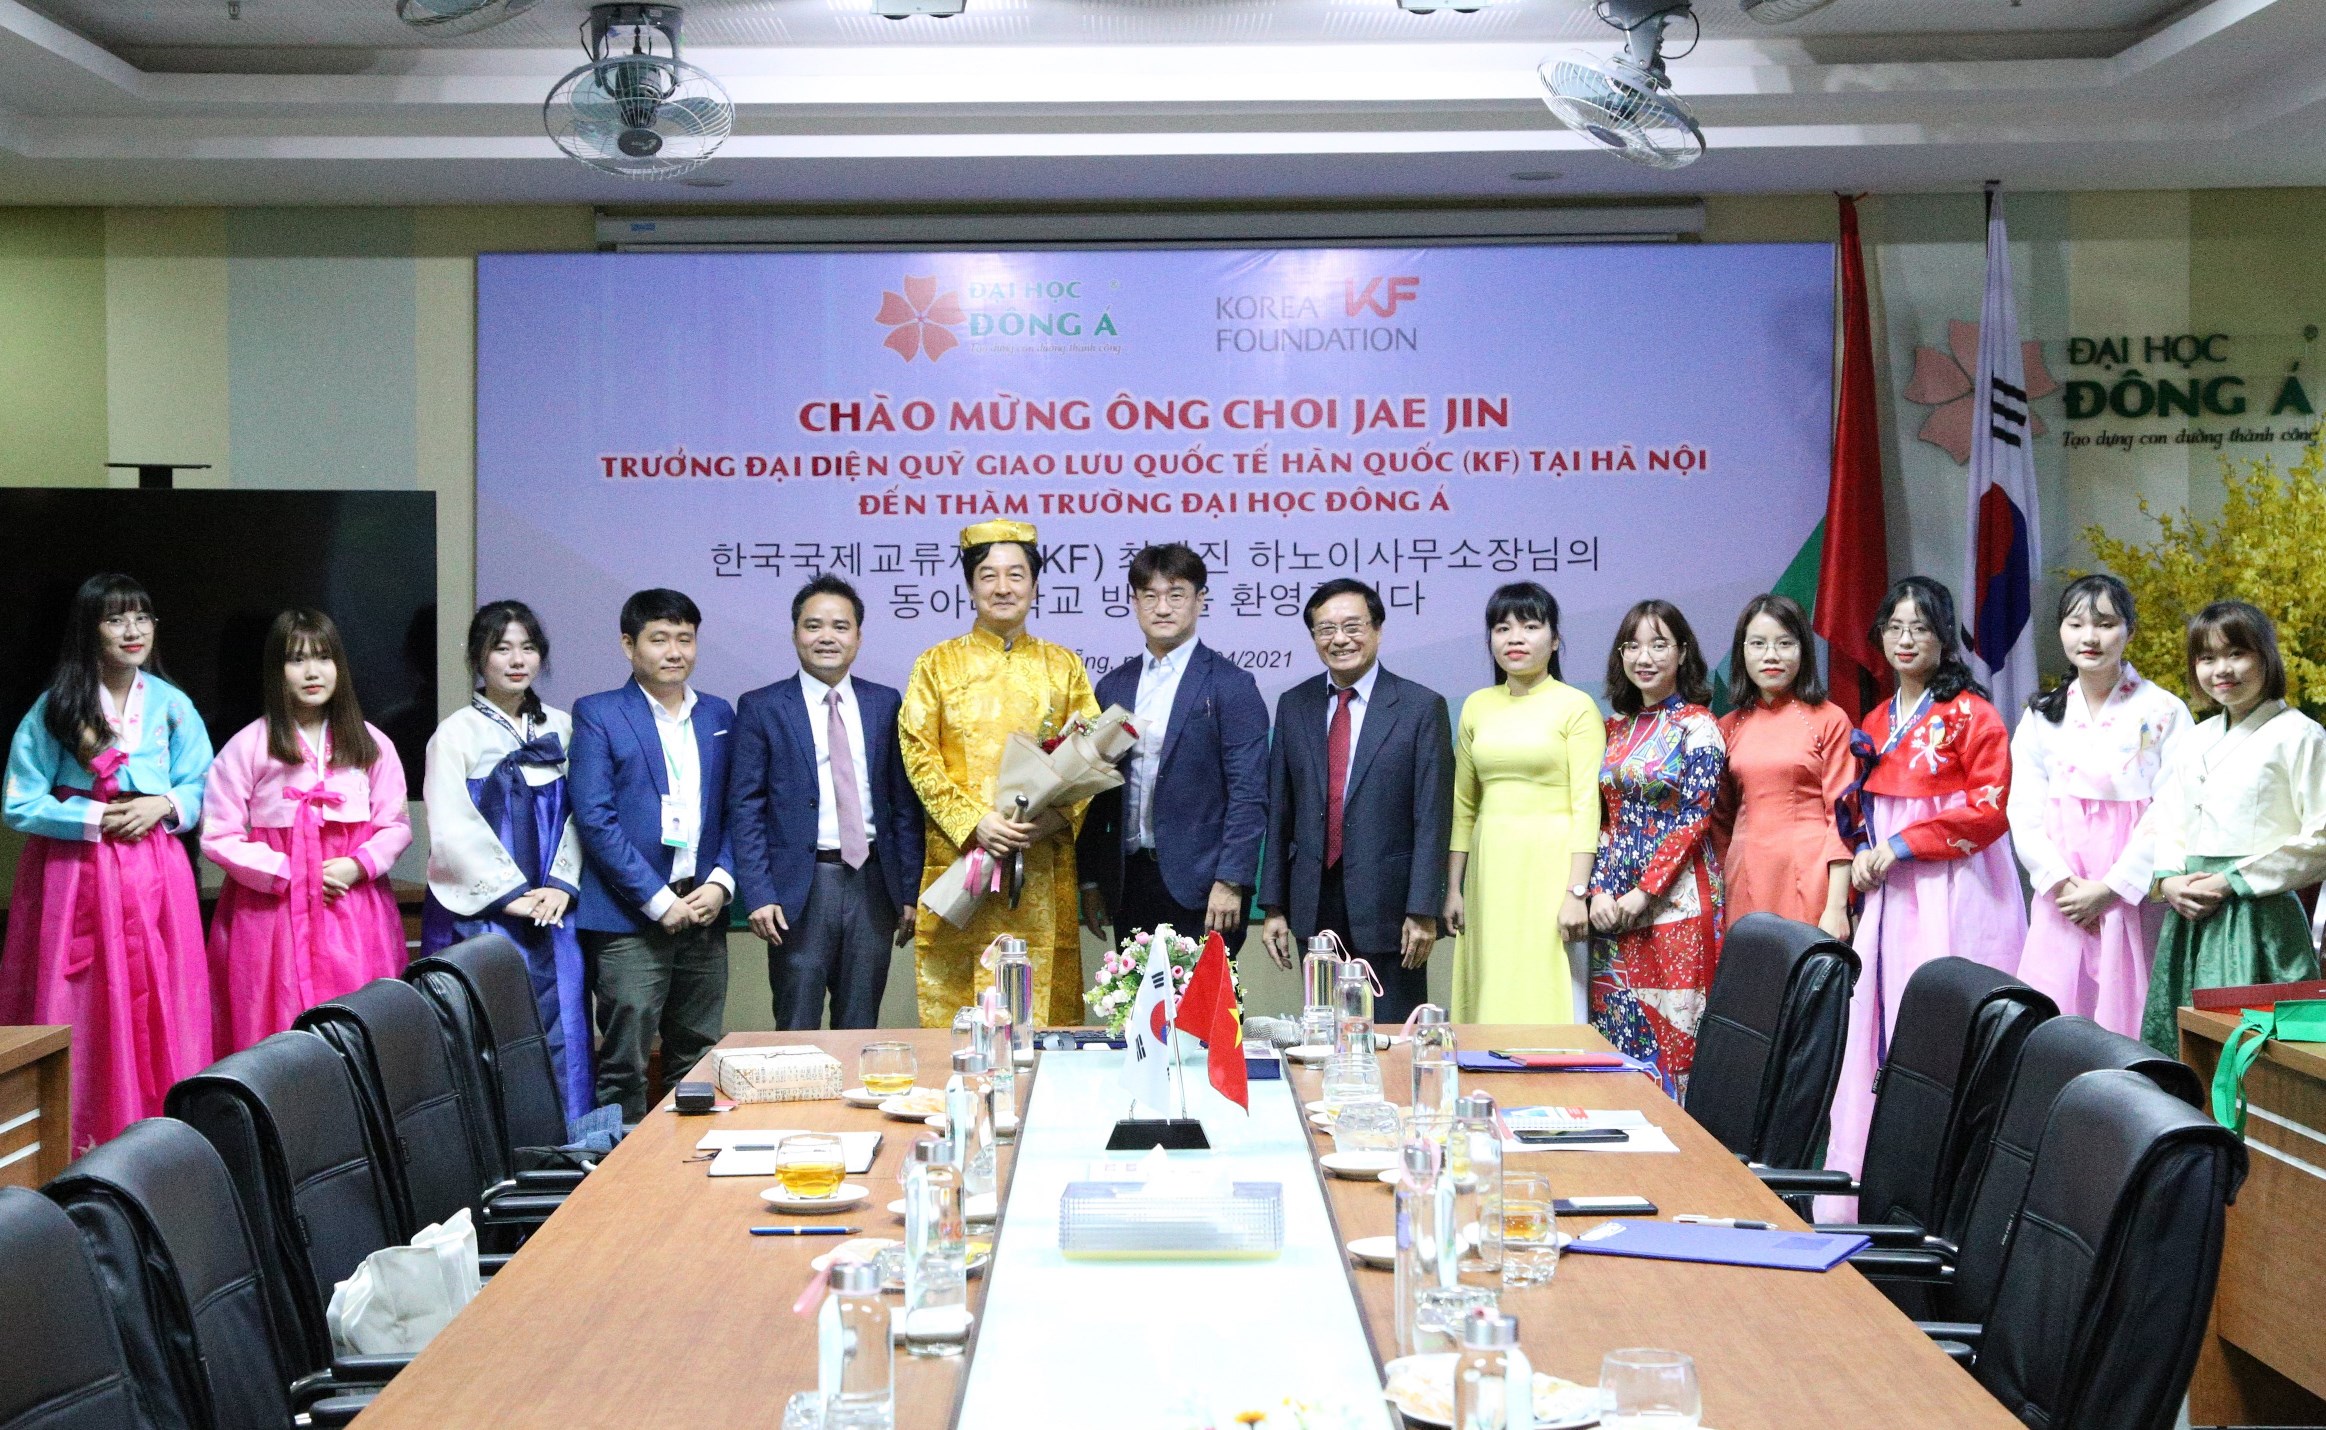 Nhiều triển vọng cho SV Ngôn ngữ Hàn ĐH Đông Á từ chuyến thăm và làm việc của Trưởng đại diện Quỹ giao lưu quốc tế (KF) tại Hà Nội